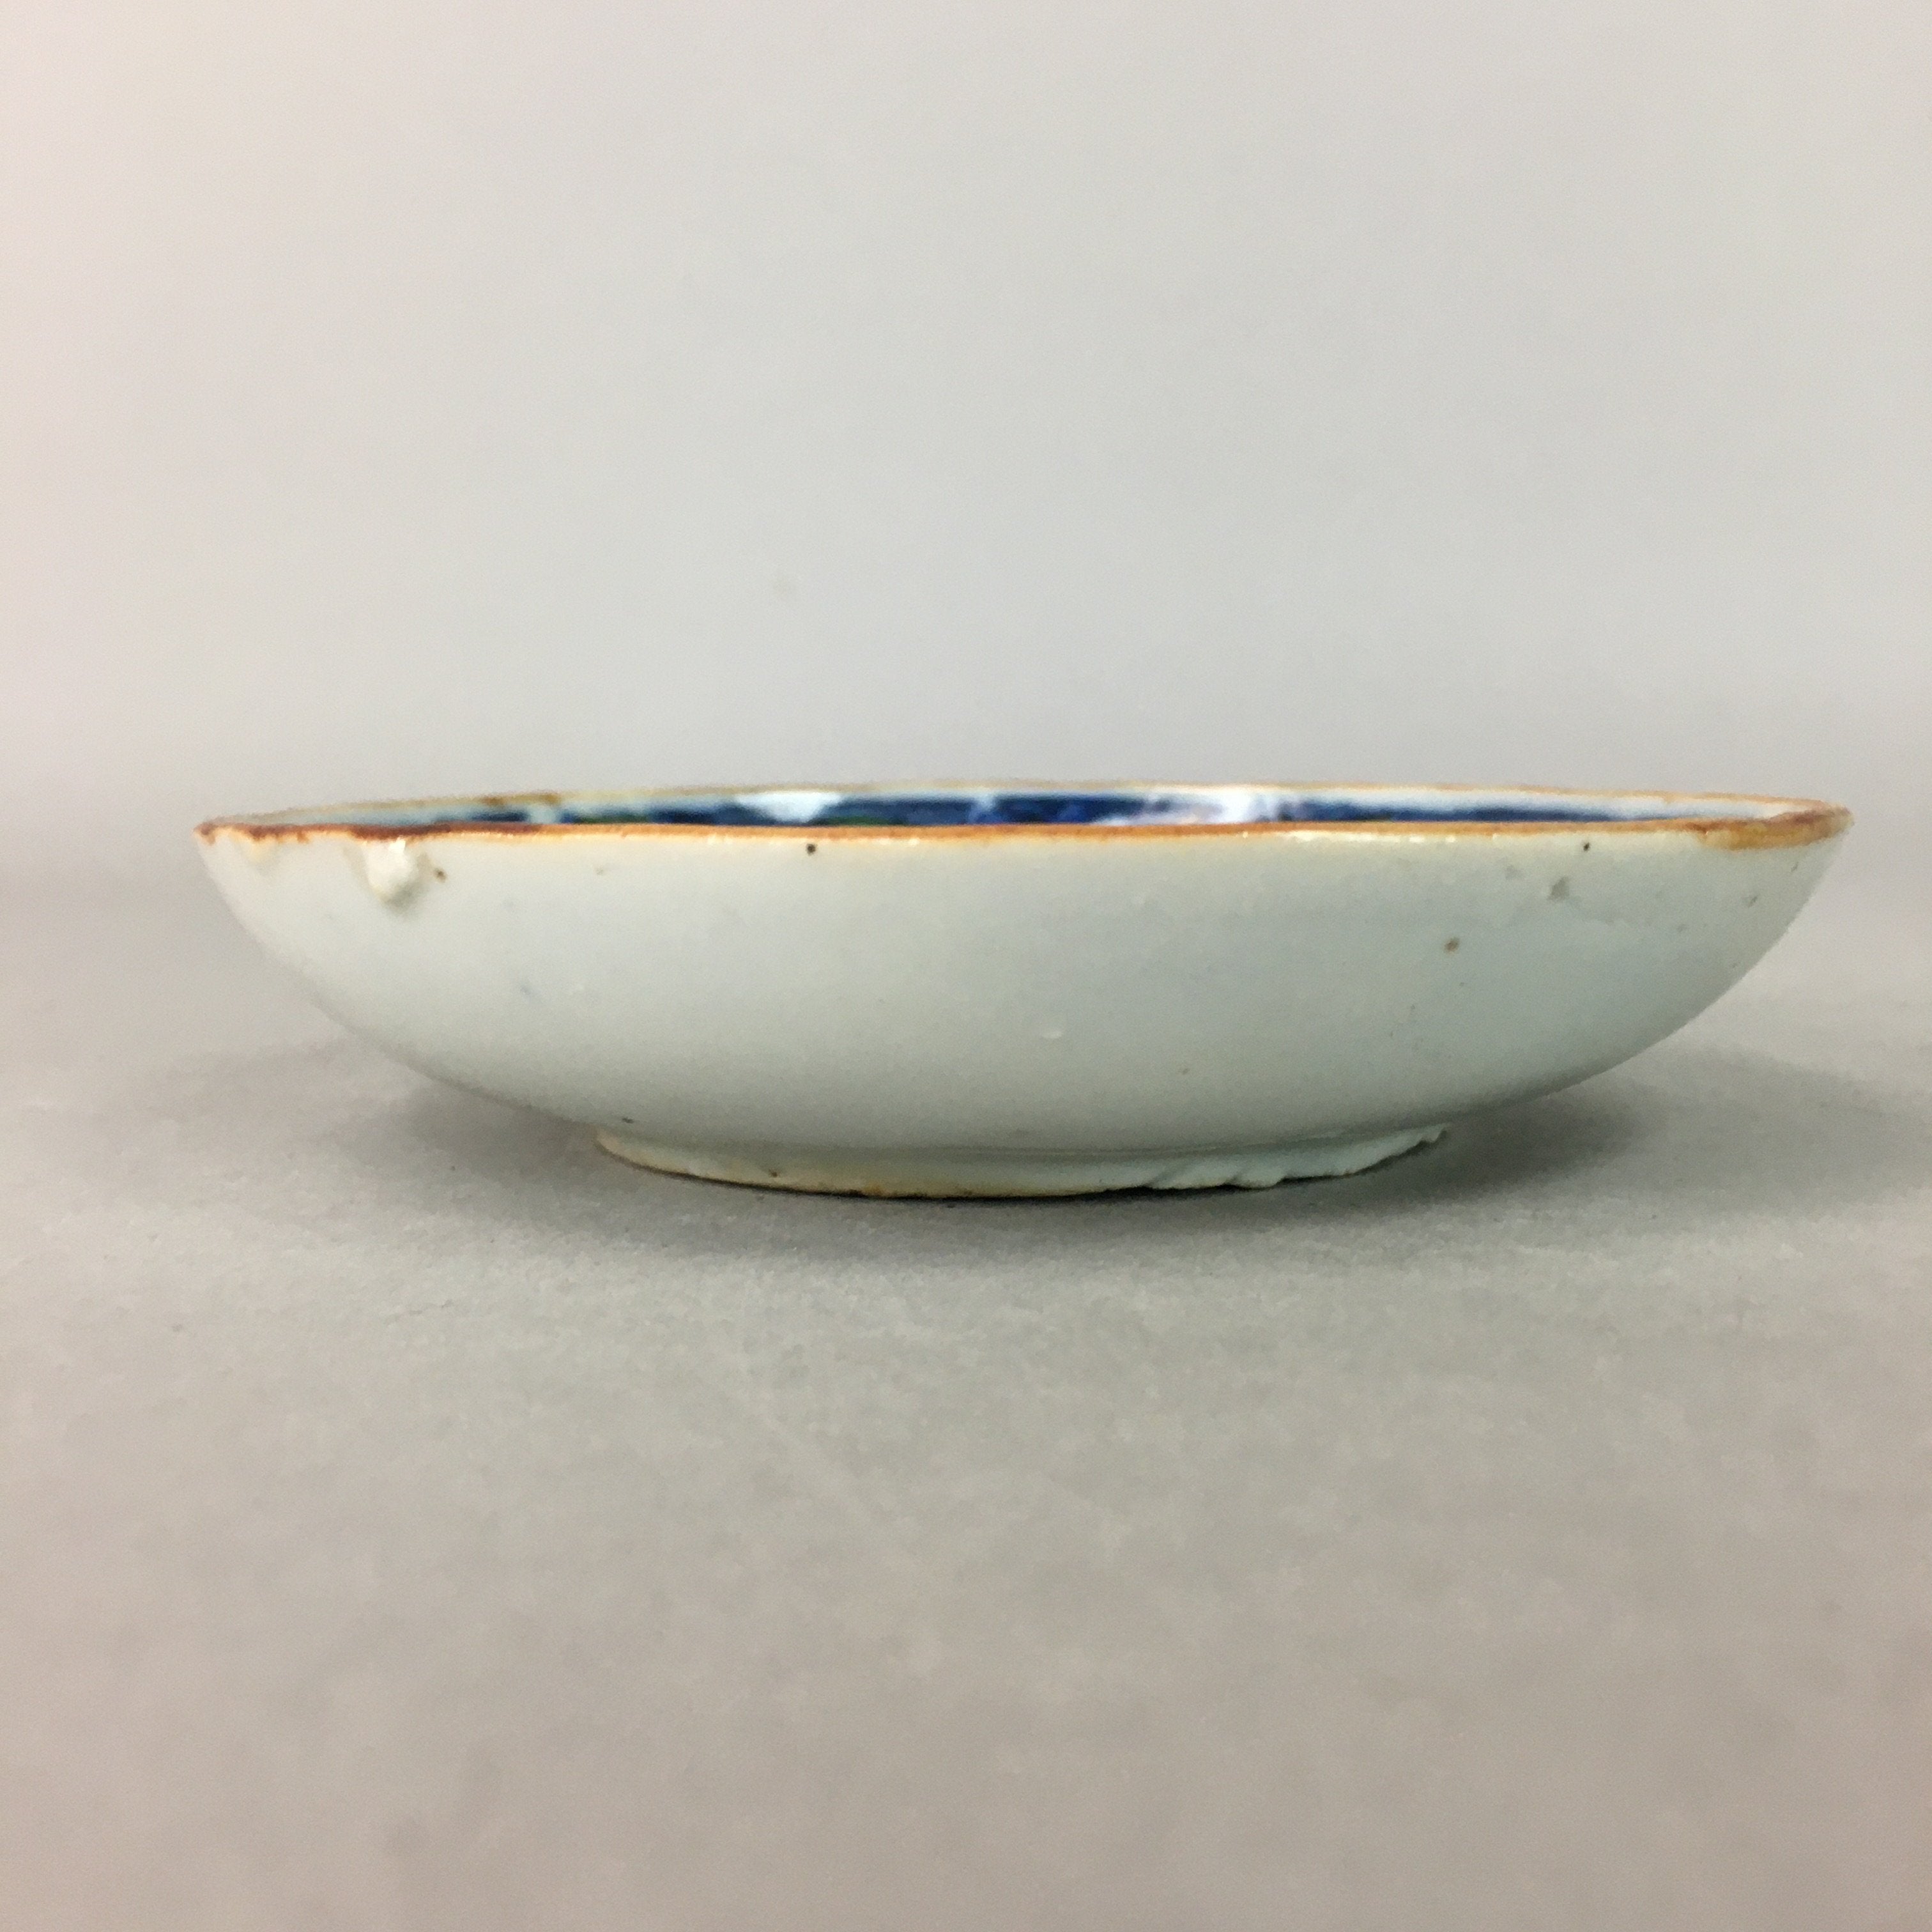 Japanese Porcelain Small Plate Vtg Kozara Blue White Geometric Floral PP106